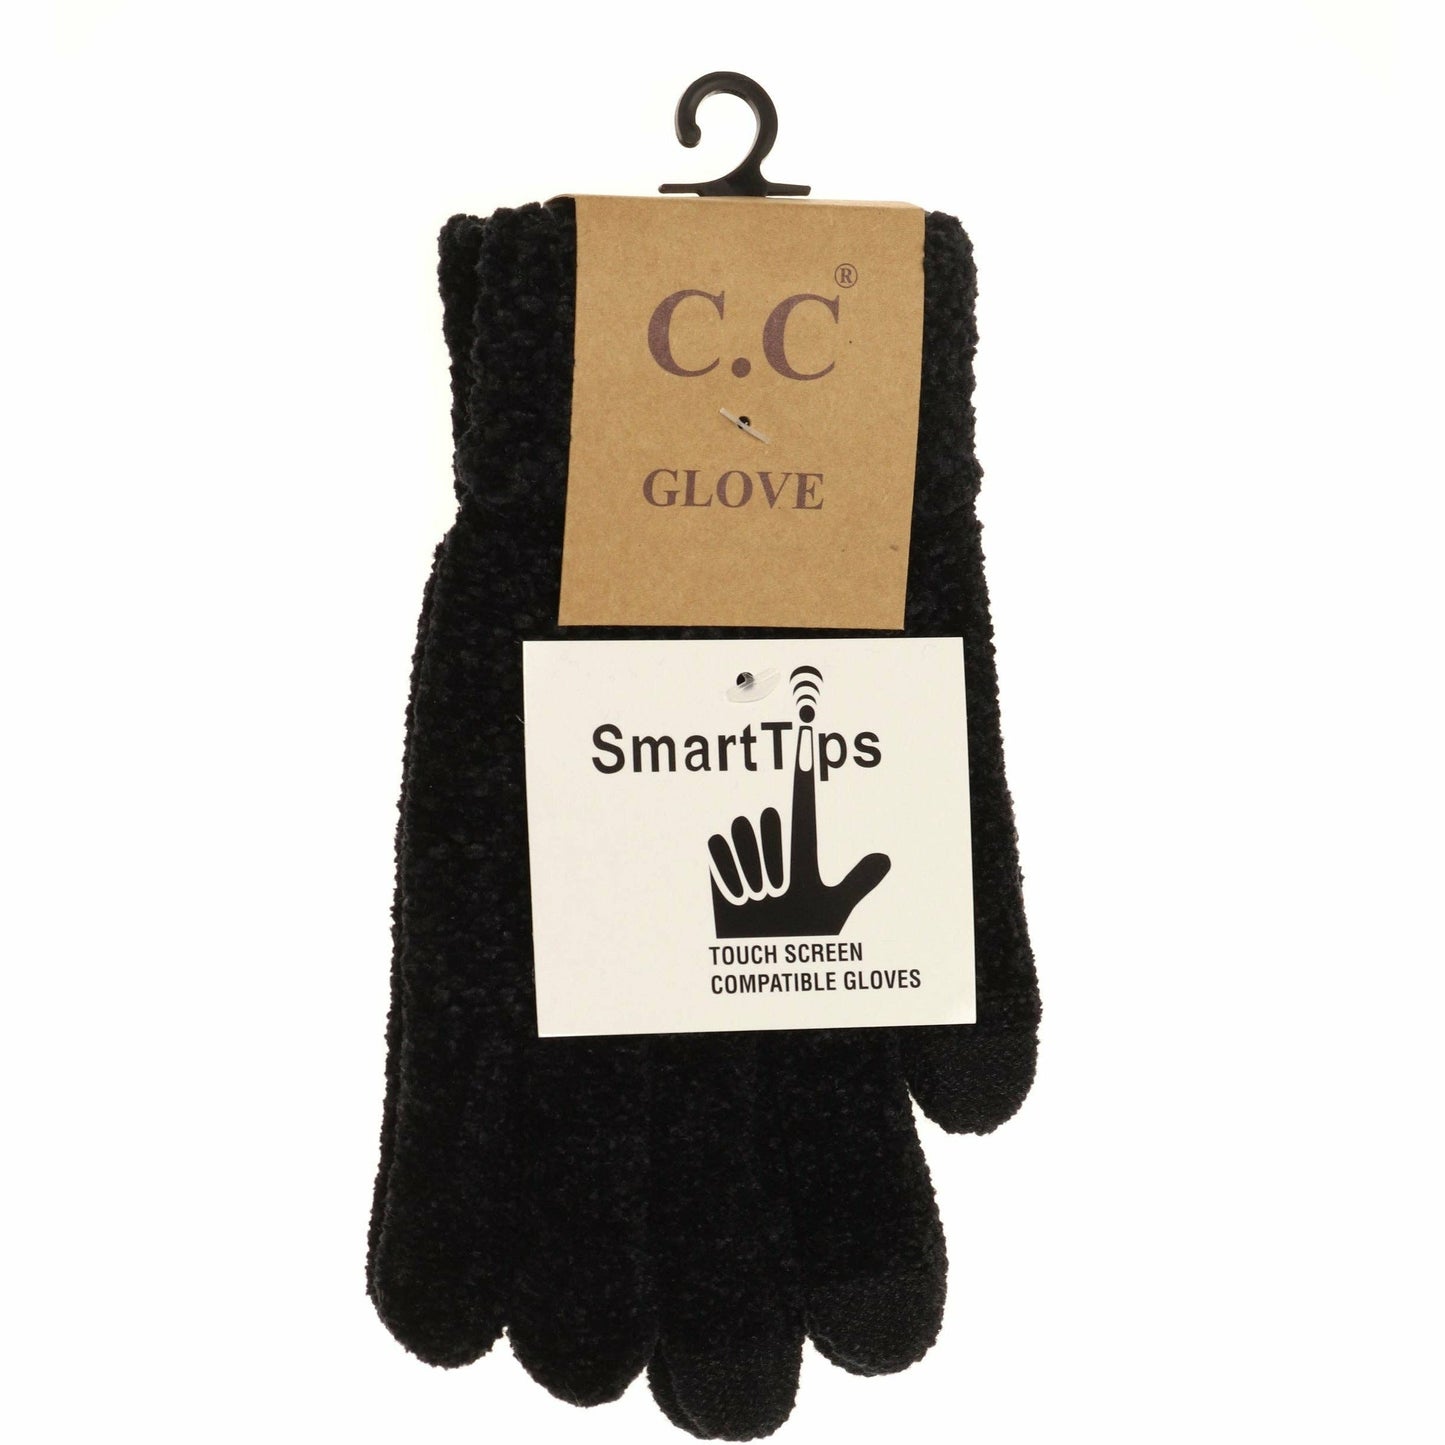 Chenille Gloves Black